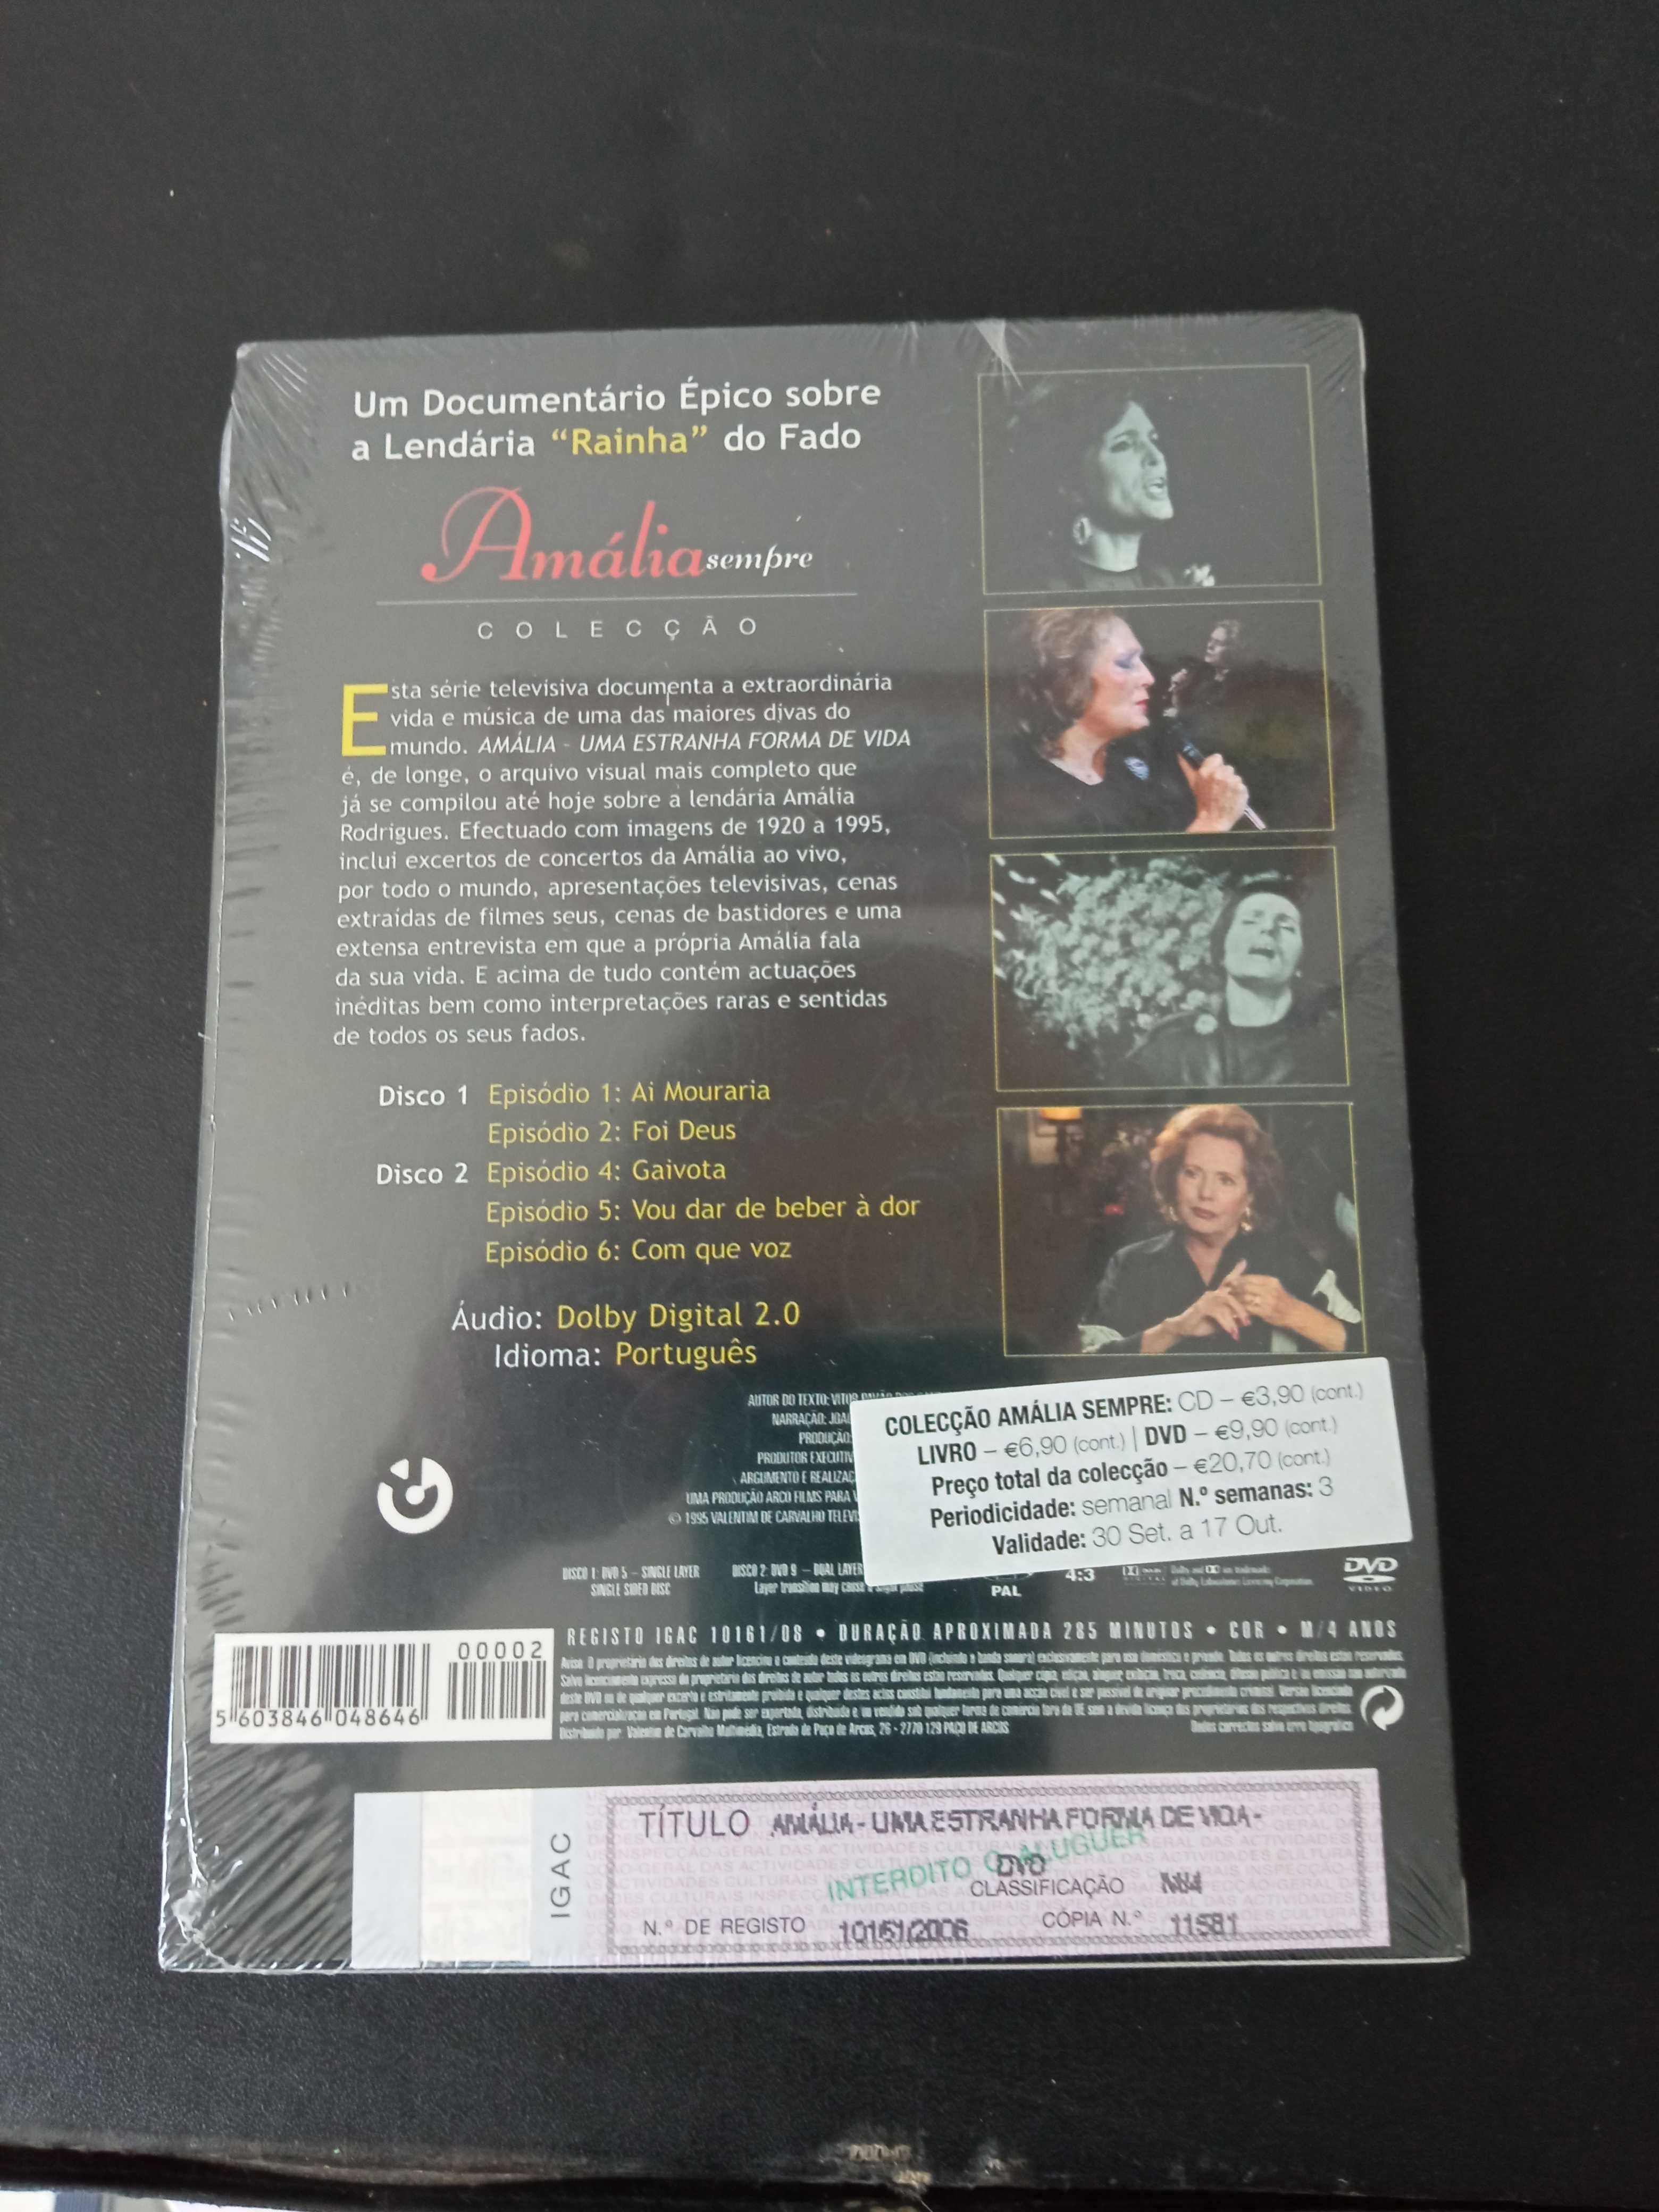 Amália - Cd + Disco Single Vinil + Cassete + Dvd + Documentário Dvd